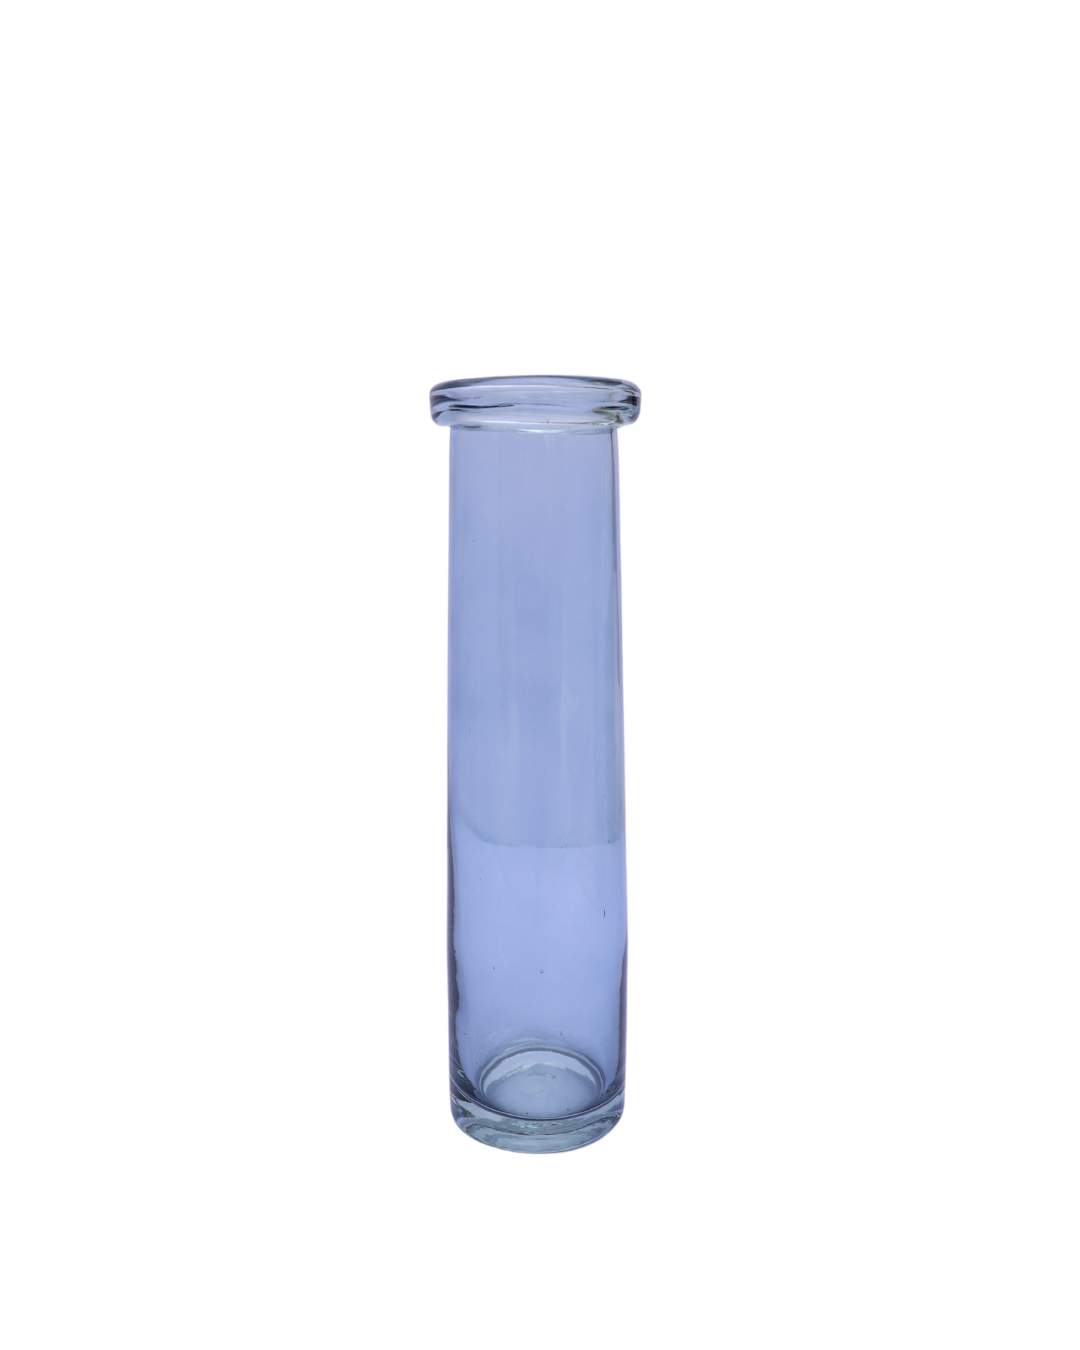 Tube Vase L - Blue